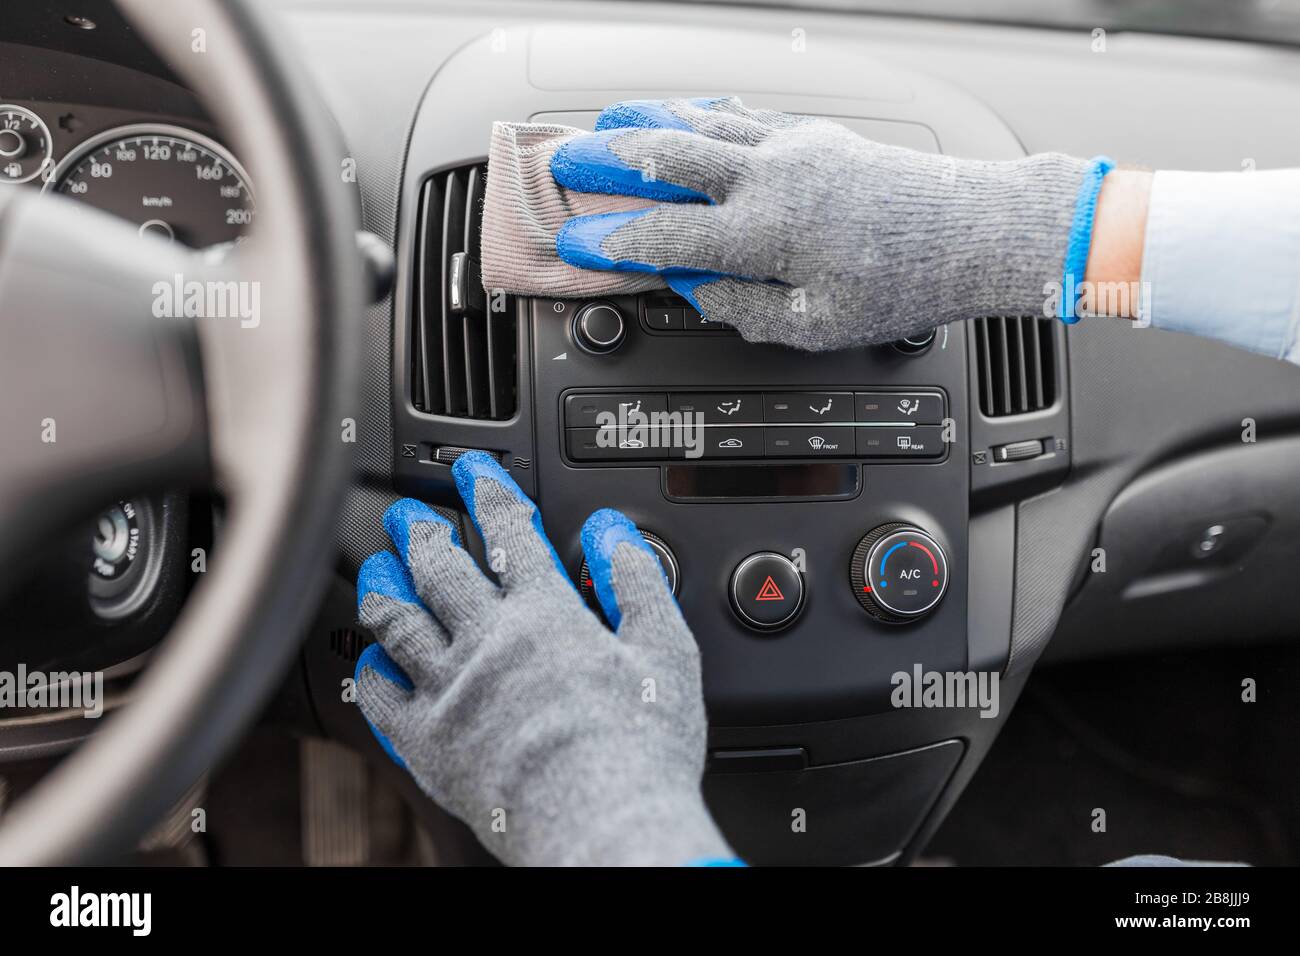 Interni auto sporca immagini e fotografie stock ad alta risoluzione - Alamy